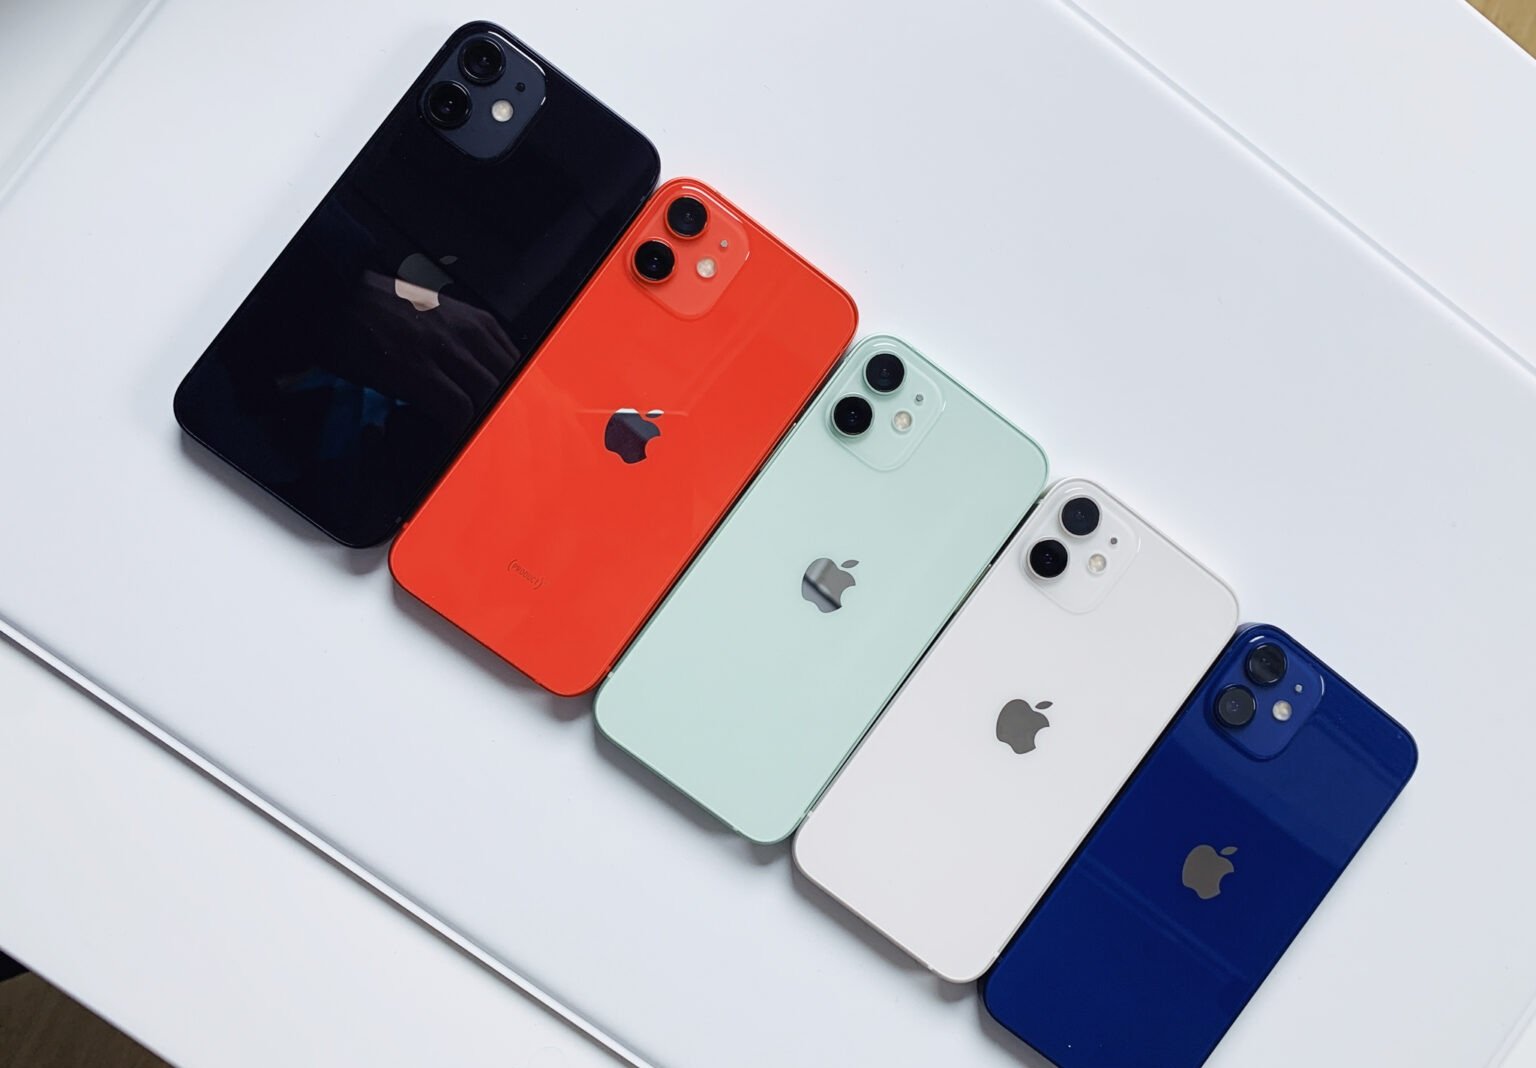 màu sắc của iPhone 12 Mini